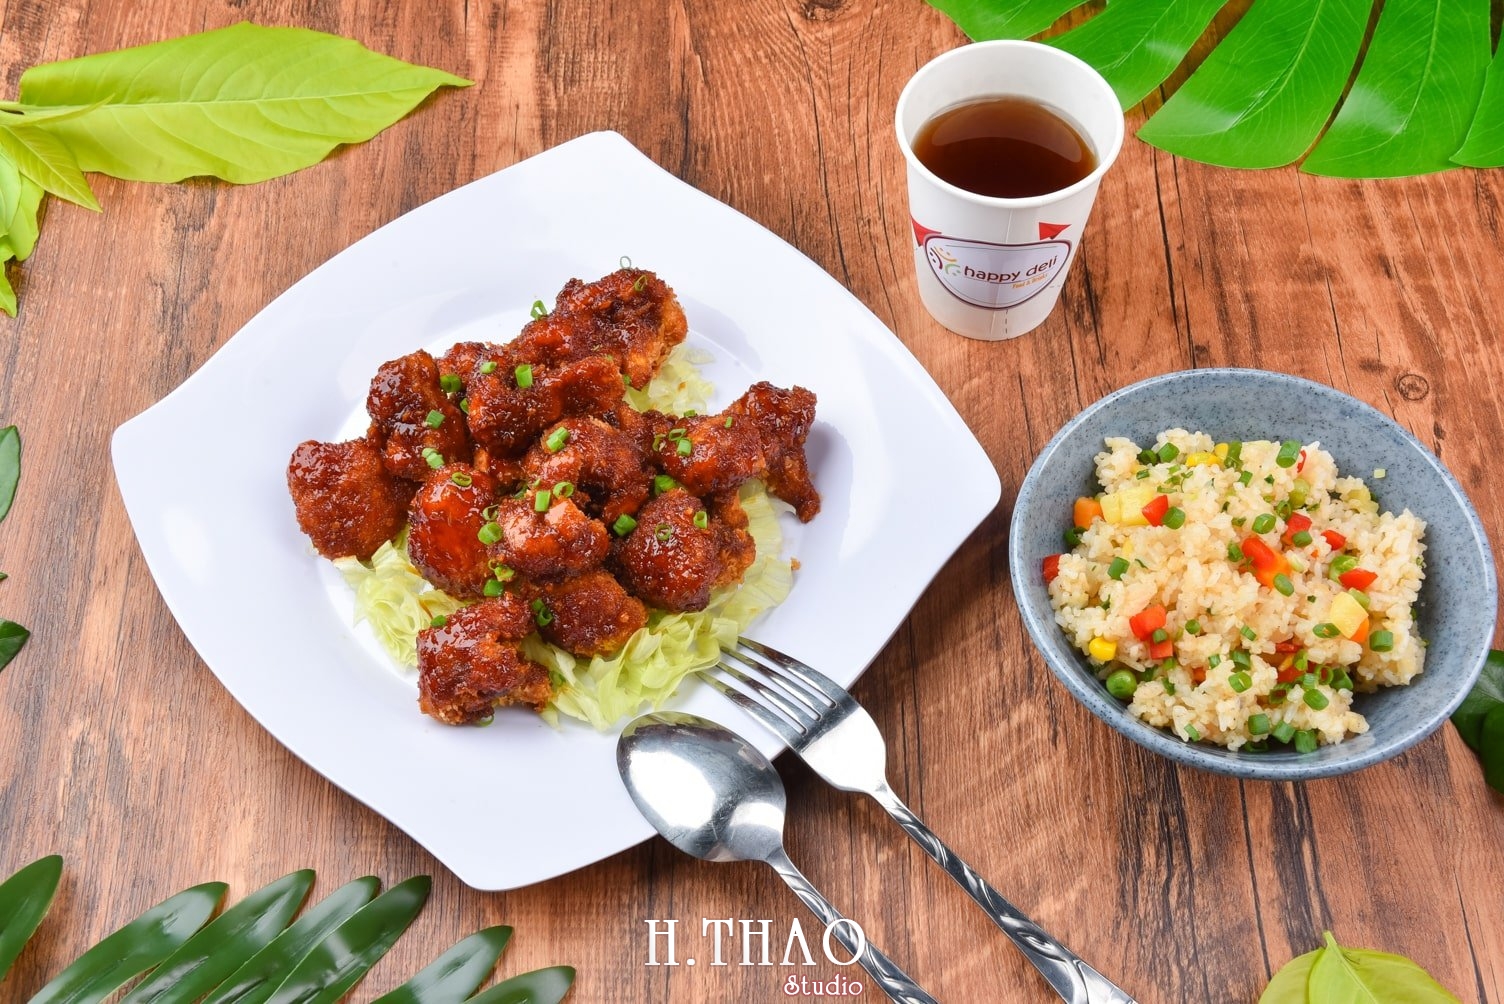 Anh food layout 5 min - Dịch vụ chụp ảnh đồ ăn đẹp, giá rẻ tại TpHCM - HThao Studio